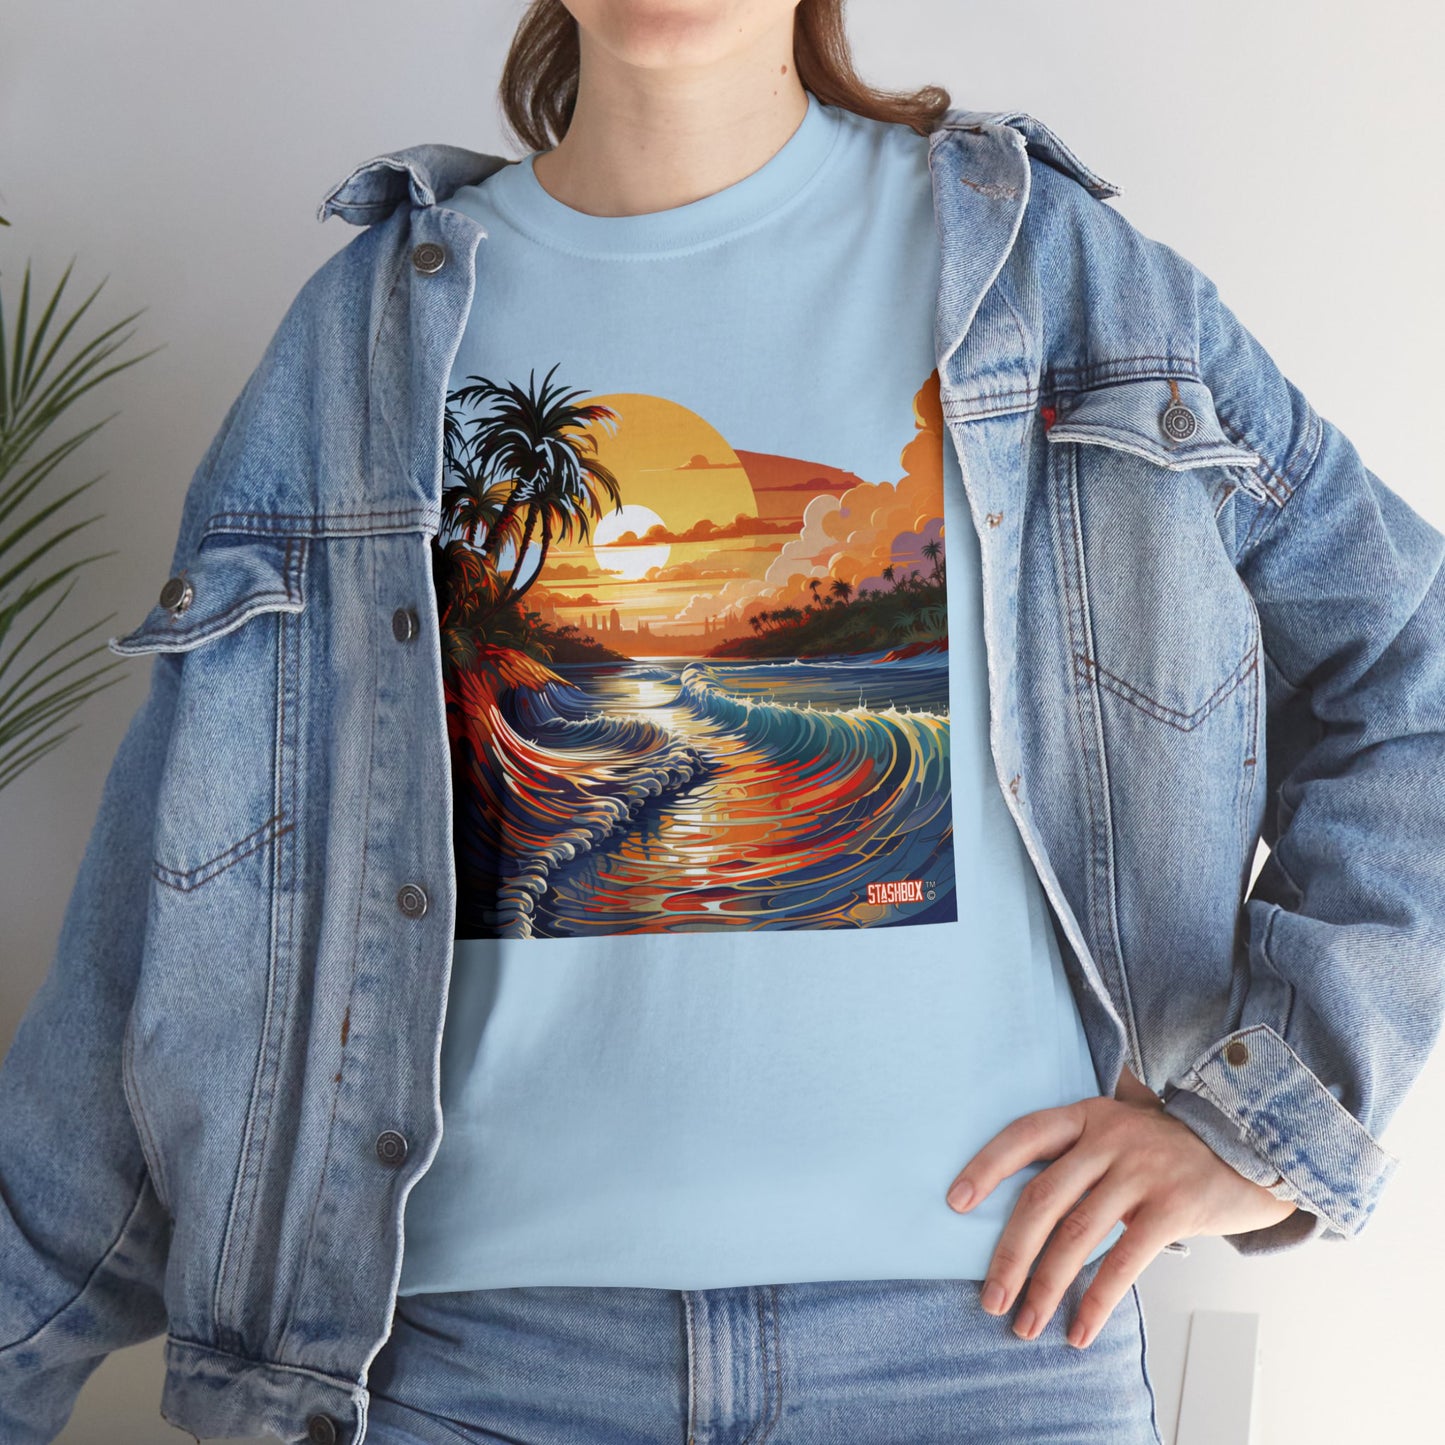 Stunning Sunset Beach Waves Art - Unisex Heavy Cotton Tee - Waves Design #057